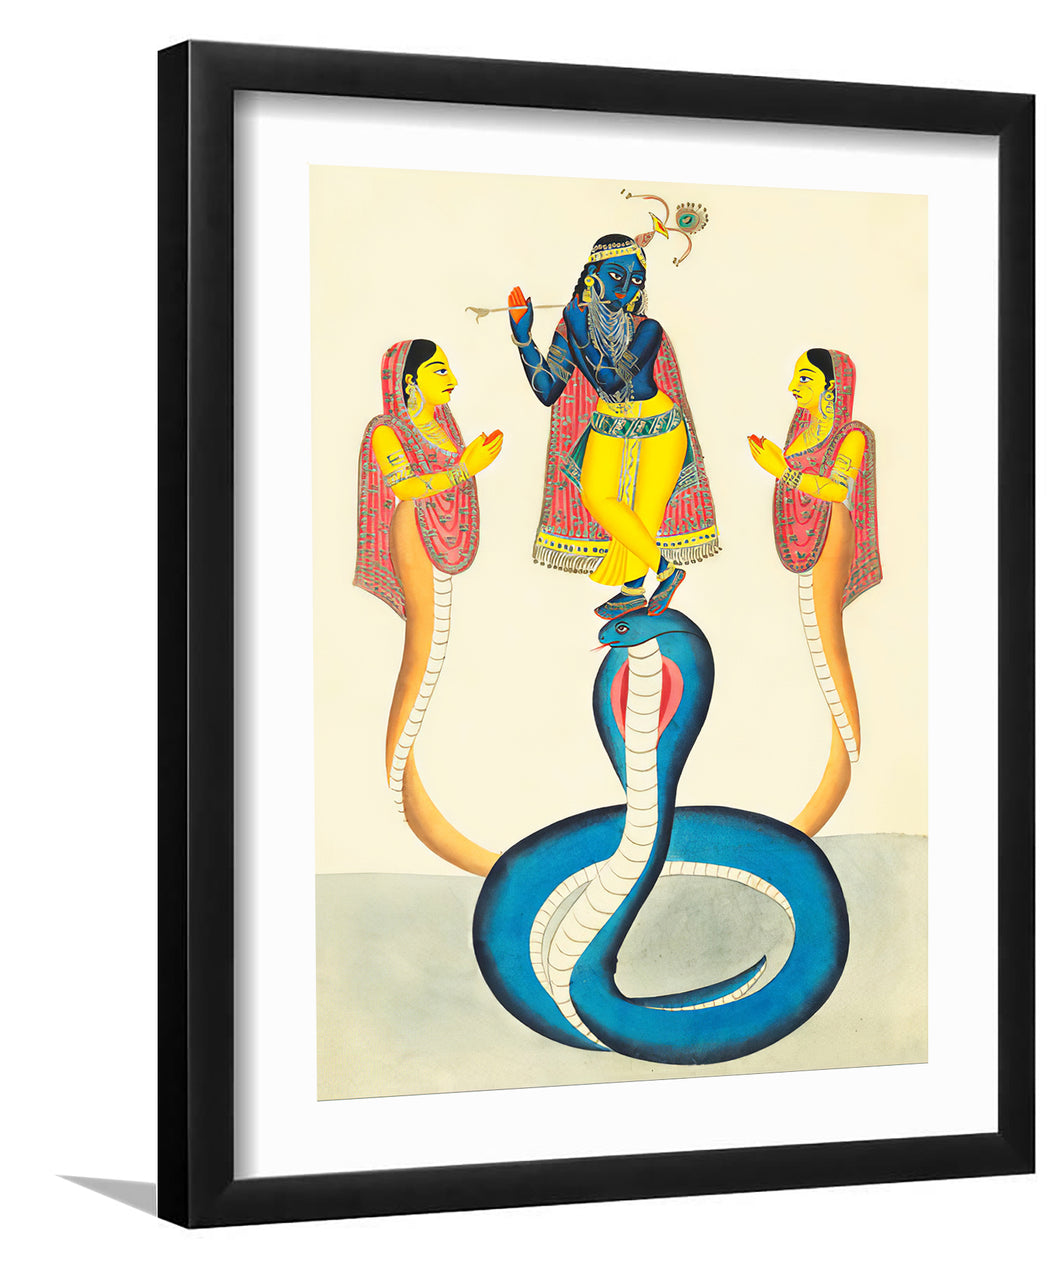 Krishna on Kaliya - Framed Prints, Painting Art, Art Print, Framed Art, Black Frame